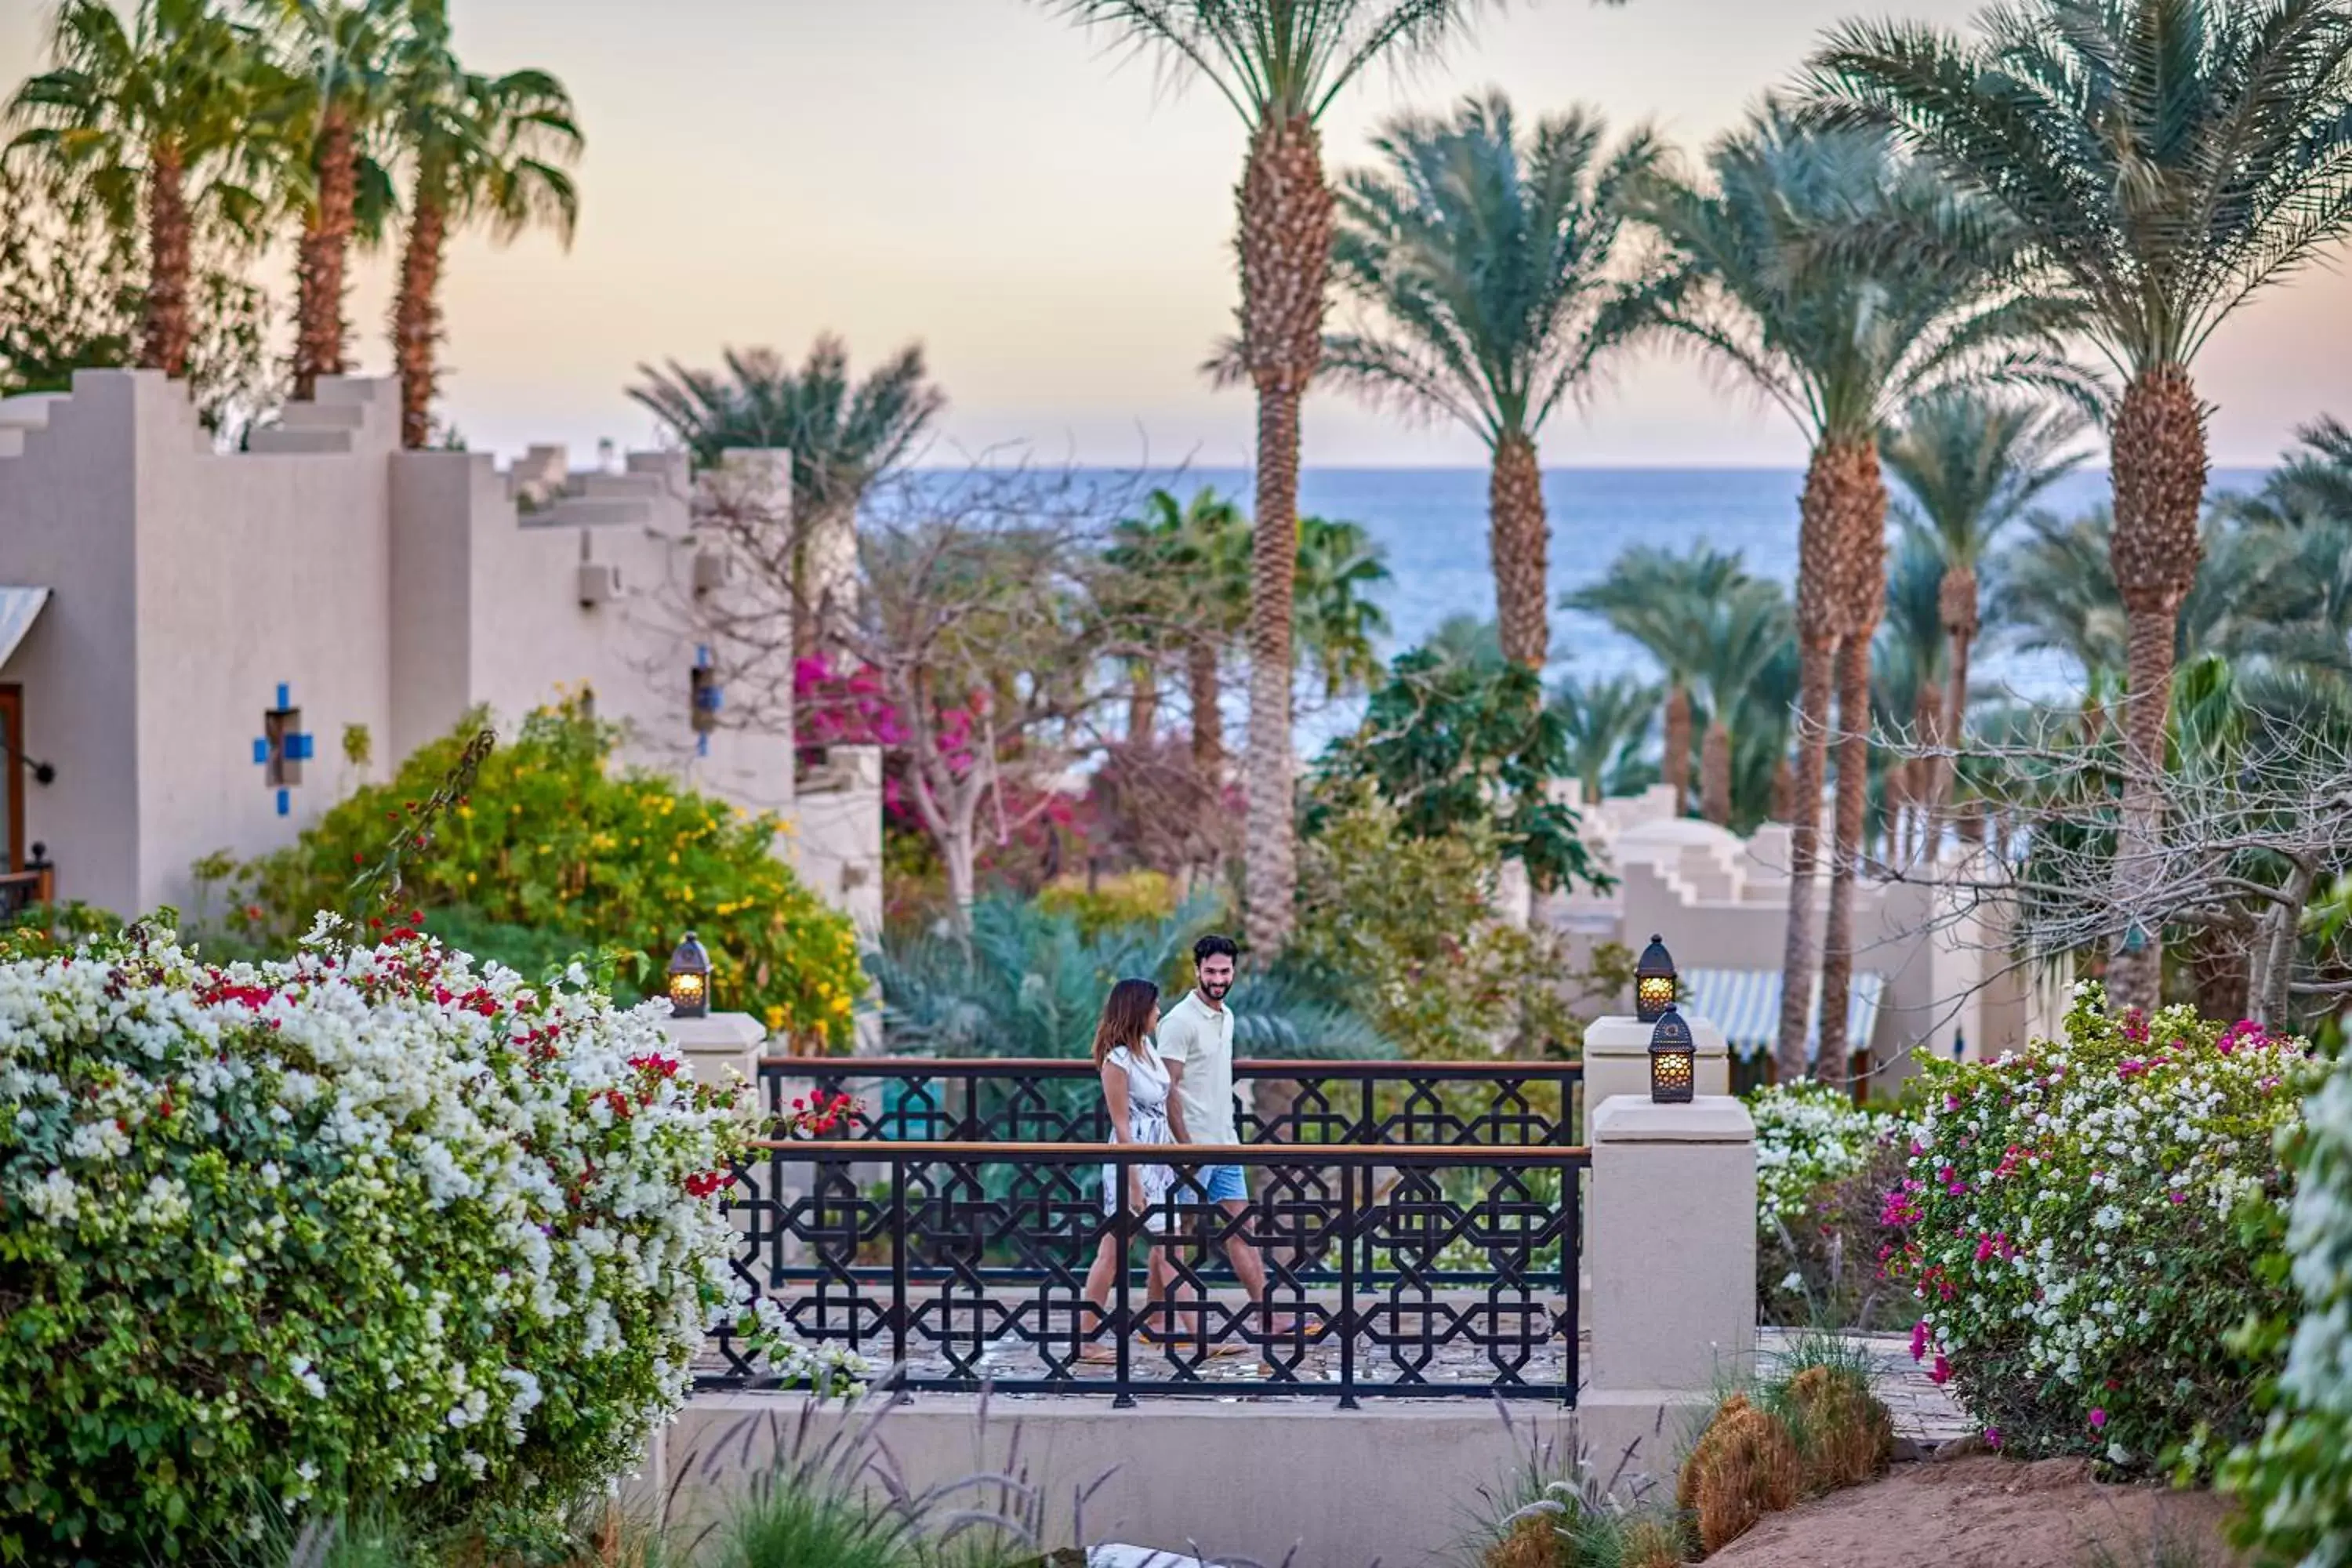 People in Four Seasons Resort Sharm El Sheikh